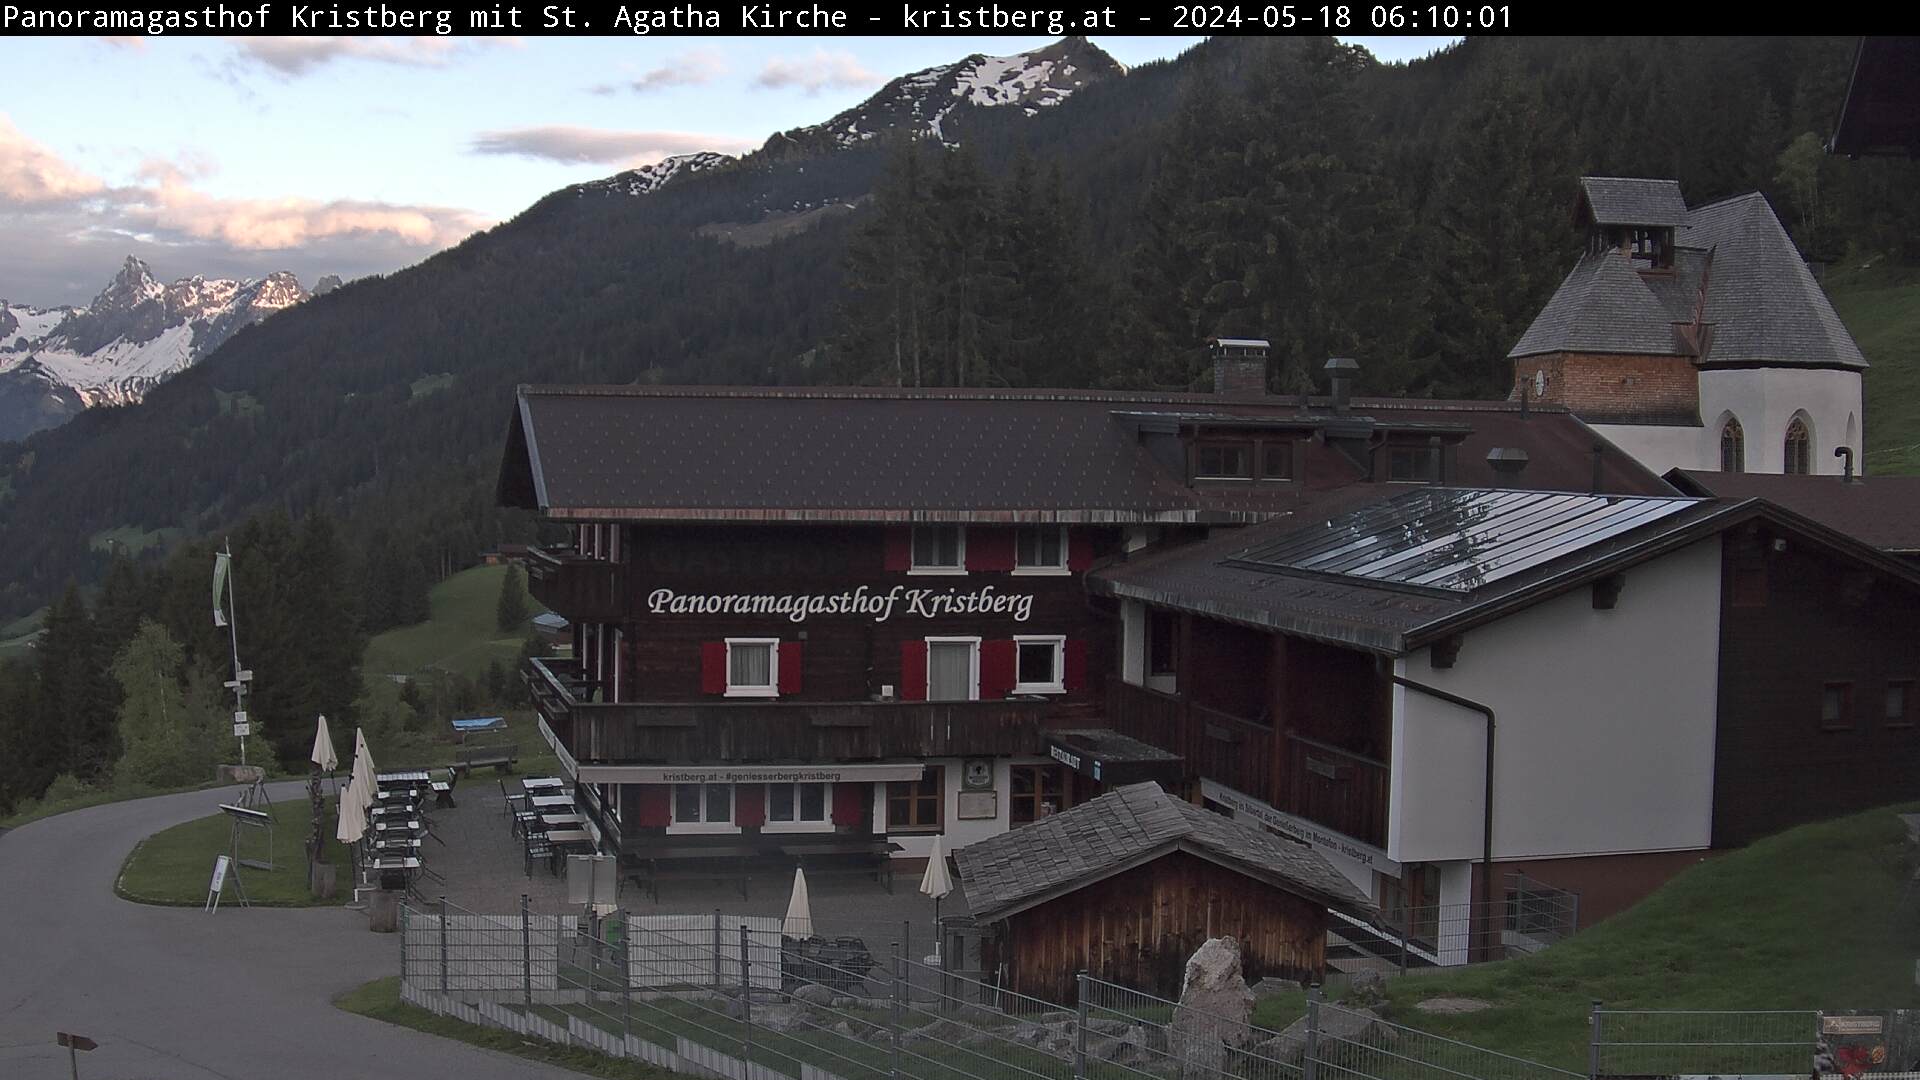 Die Webcam mit diesem Livebild zeigt den Panoramagasthof Kristberg, die St. Agatha Bergknappenkapelle, den Blick auf die Rätikongebirgsgruppe mit der Zimba, sowie die Ganzaläta, Falle und die obere Wiese mit Alpilaköpfle. 